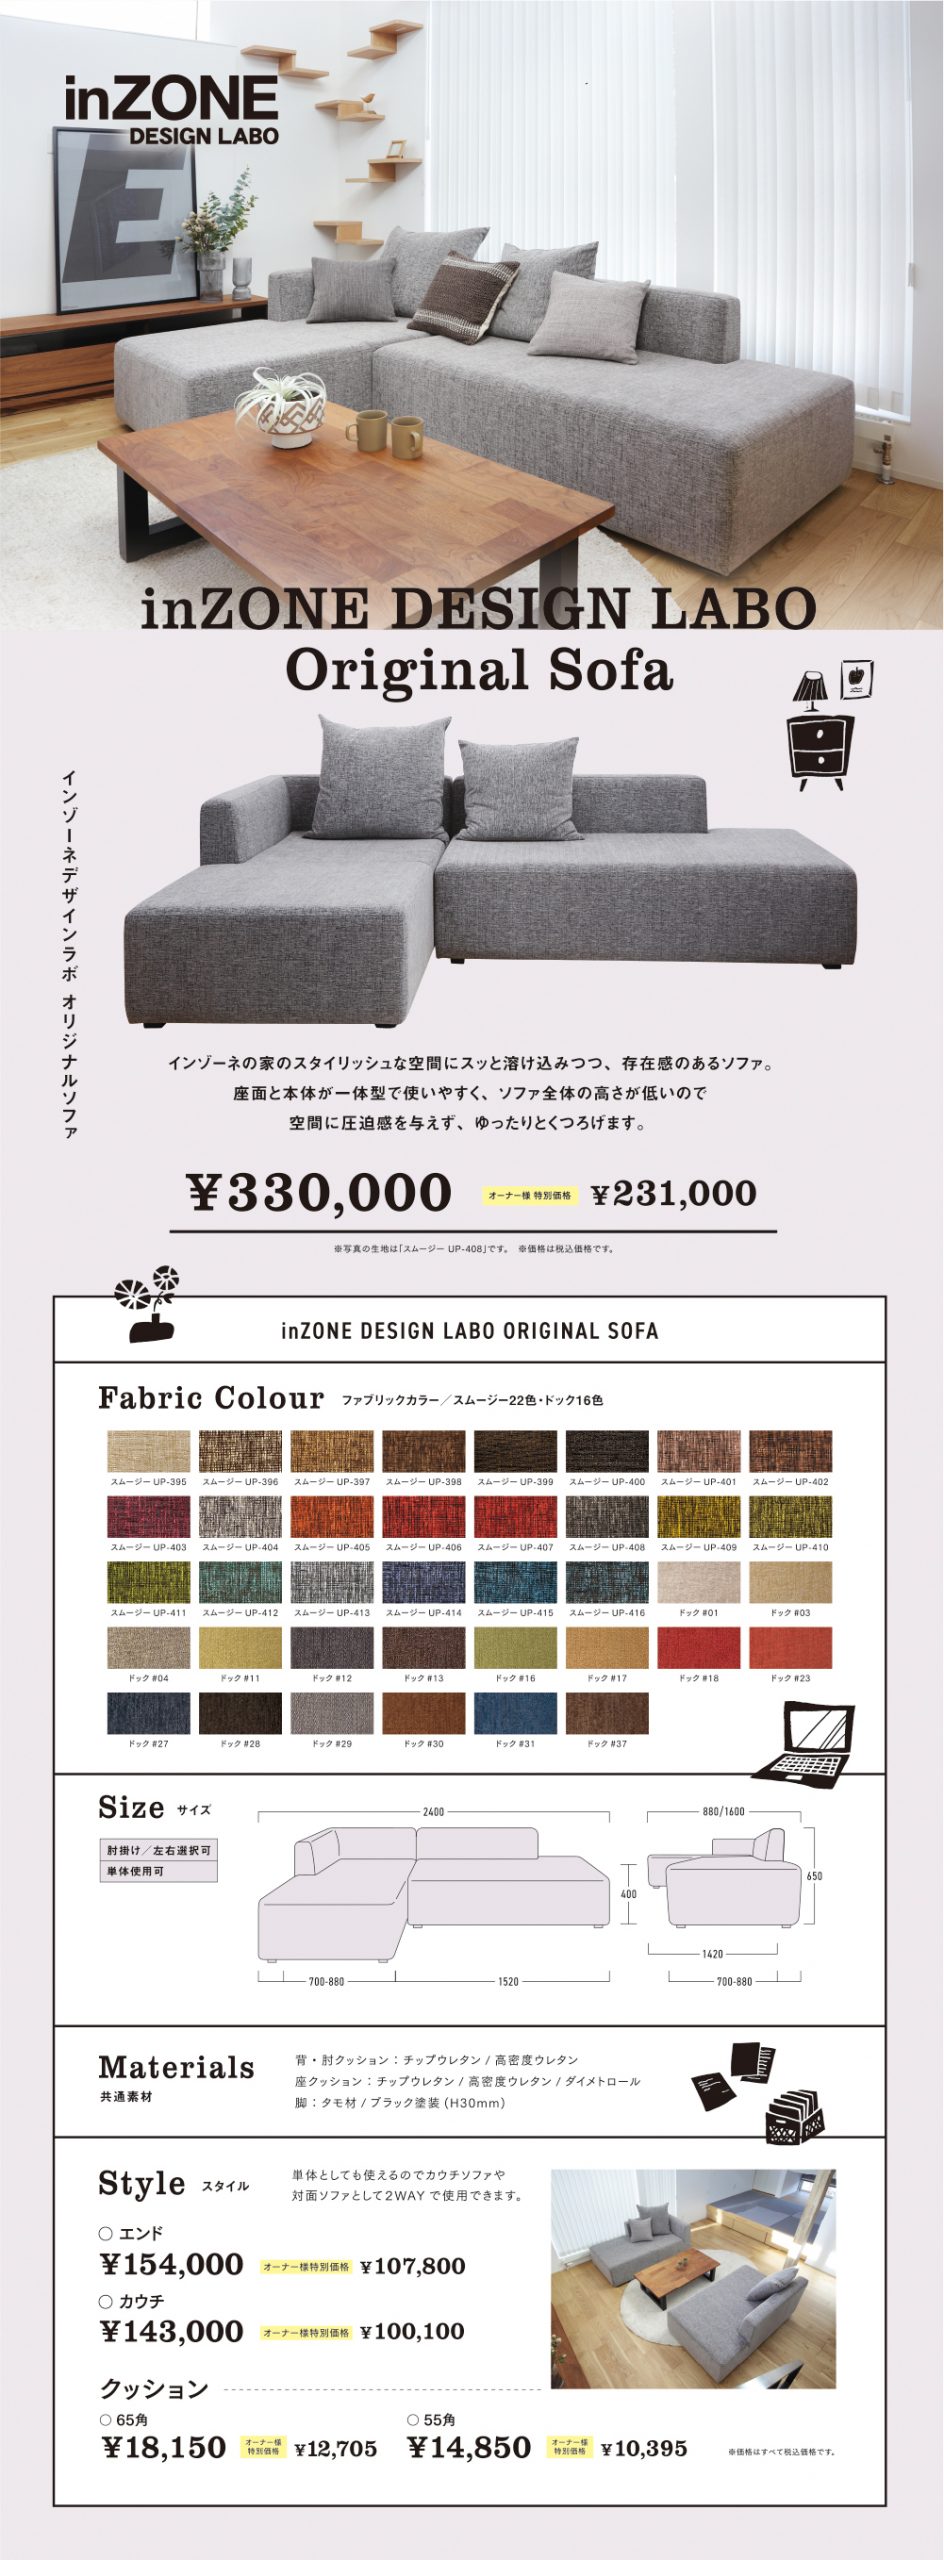 inZONE DESIGN LABO sofa